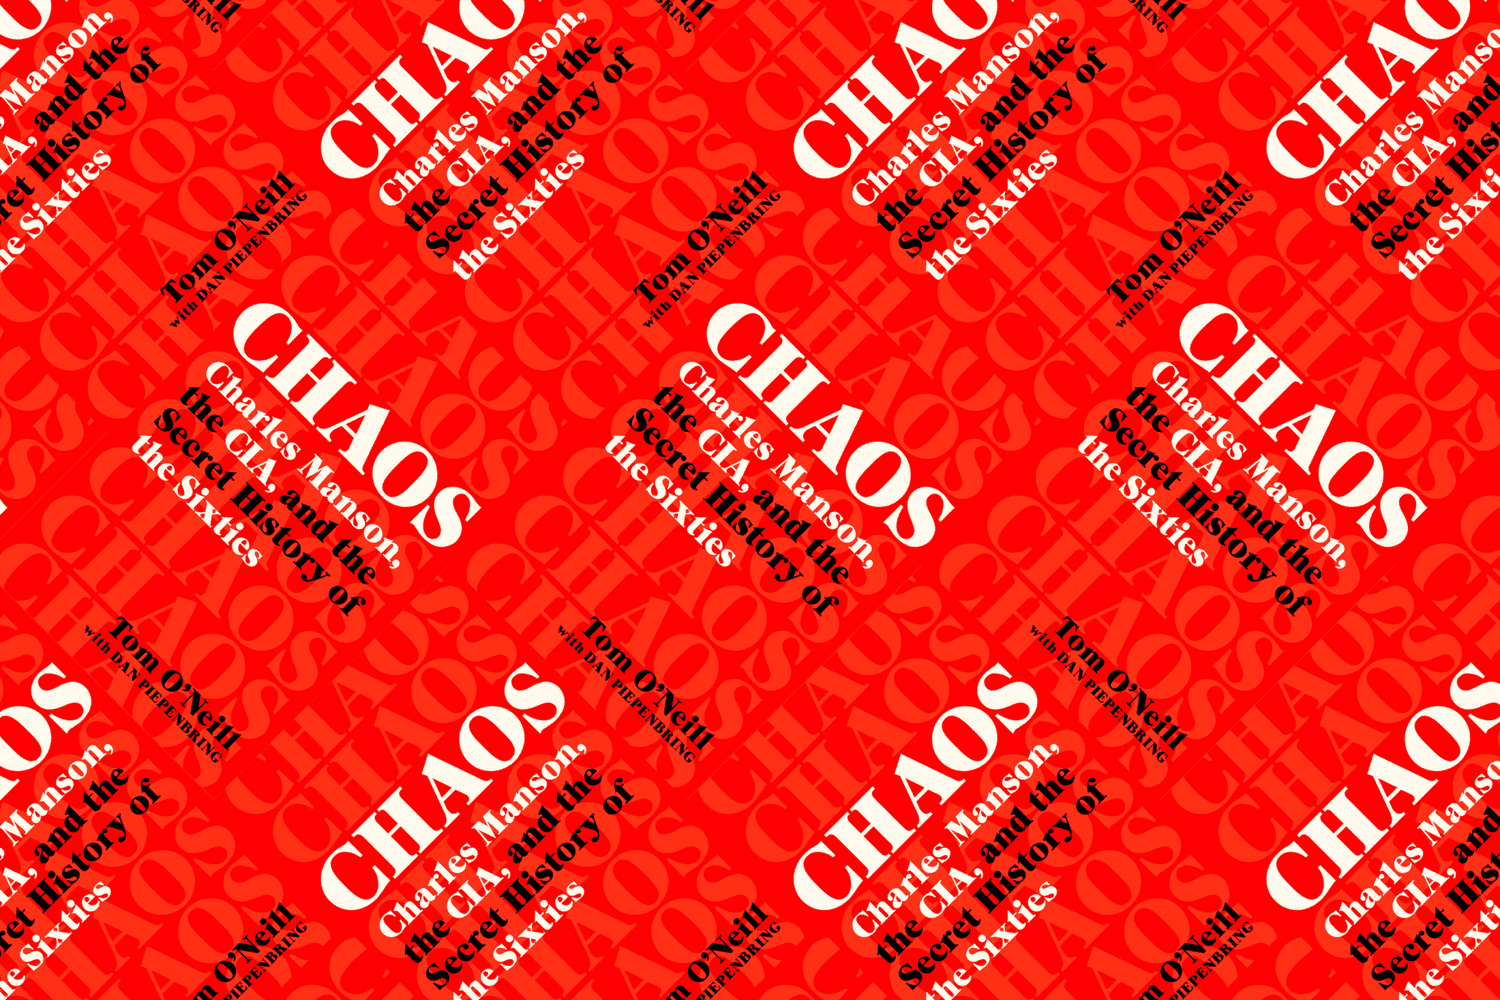 Chaos Cover Header